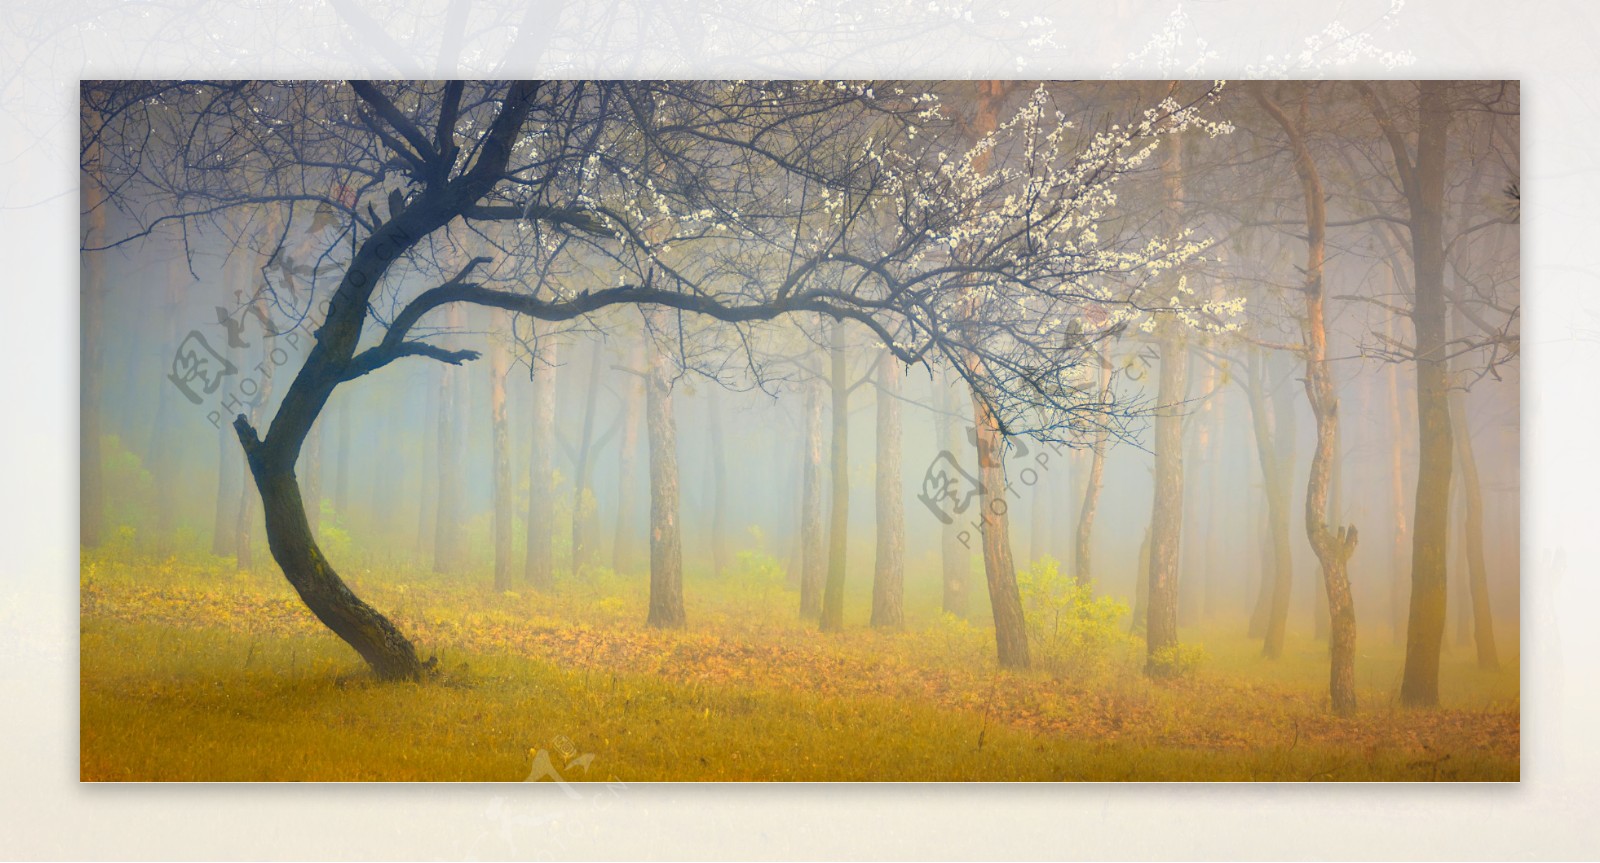 迷雾中树林风景图片